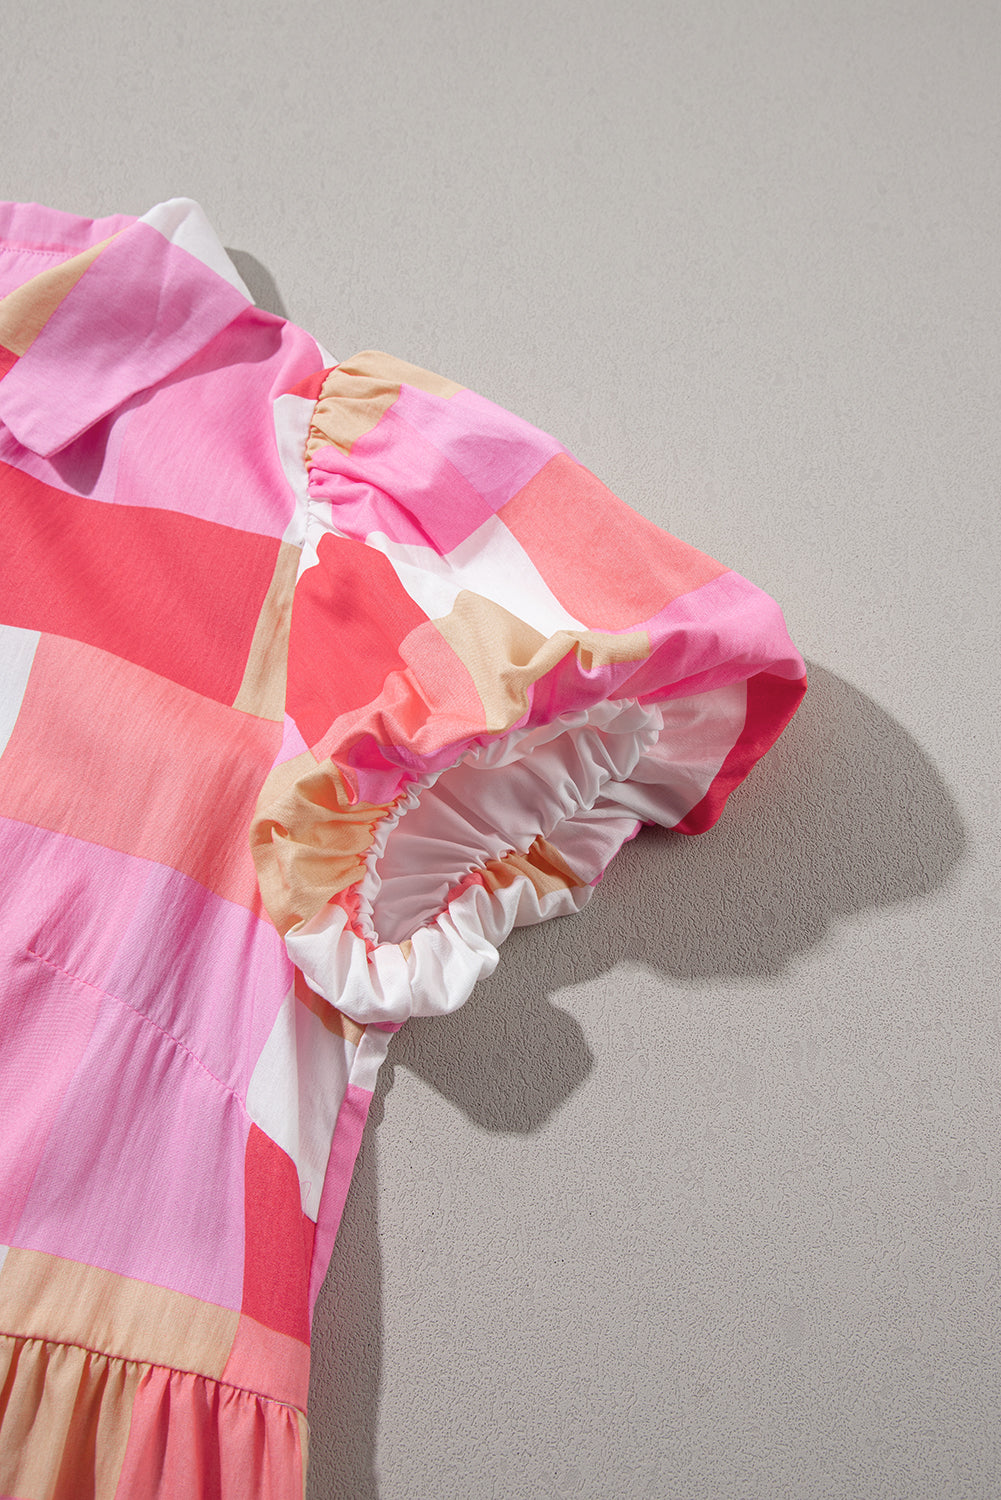 Rožnata večplastna obleka s karirastim potiskom in napihnjenimi rokavi